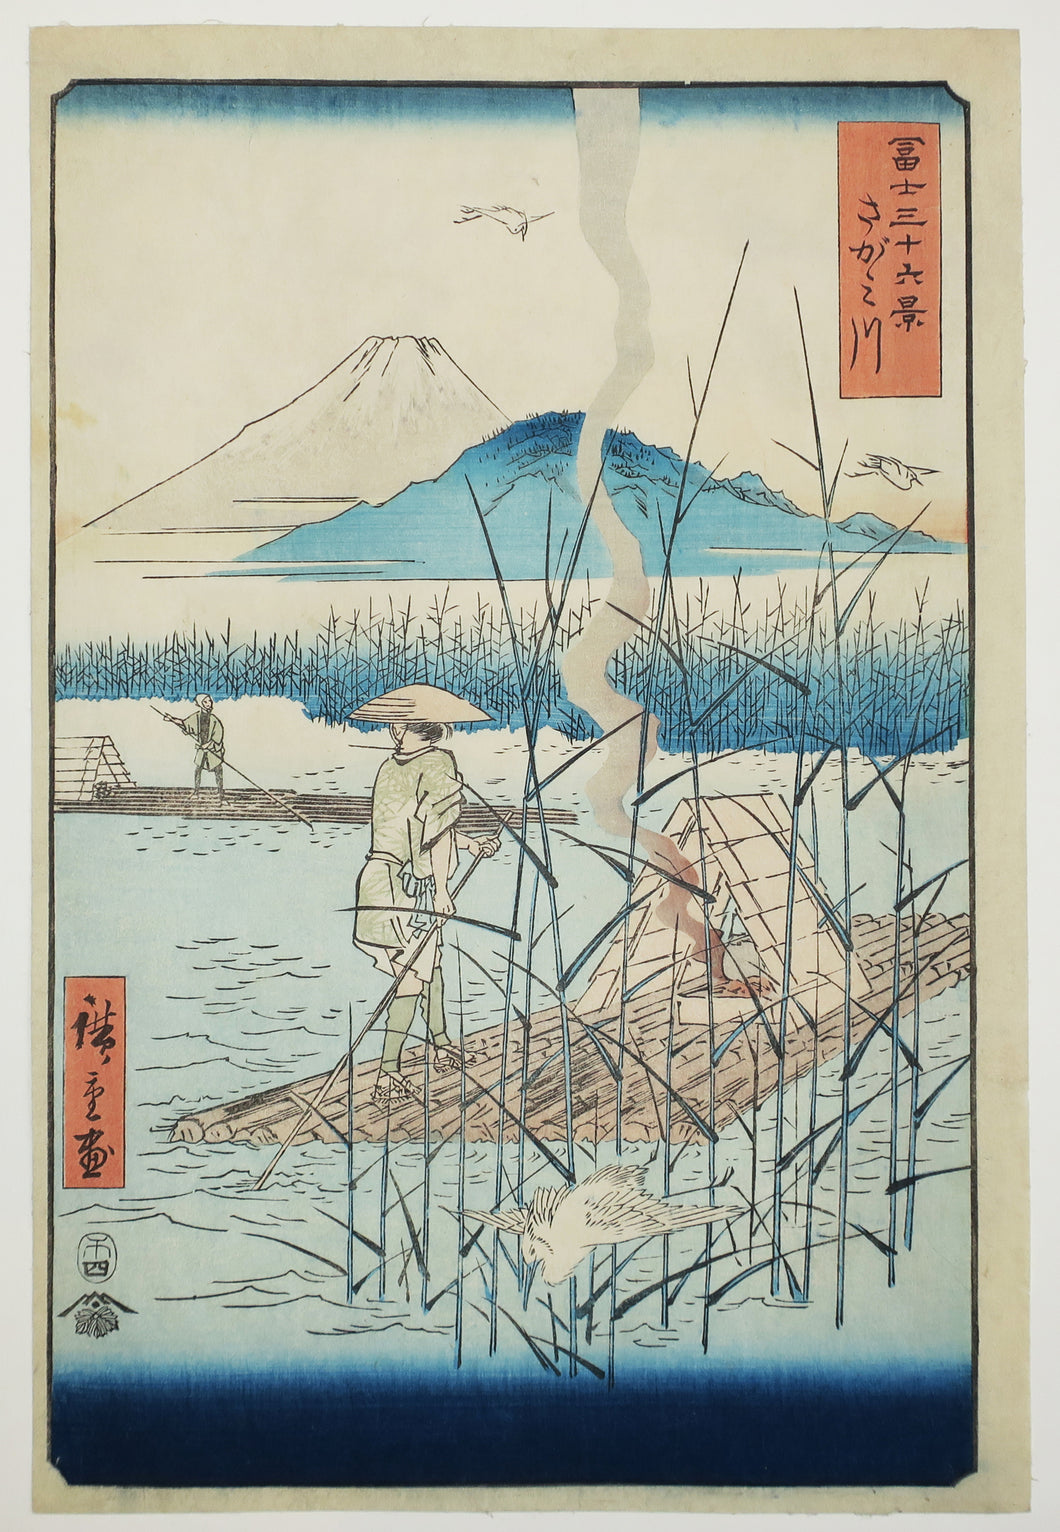 La rivière Sagami (Sagamigawa). 1858.